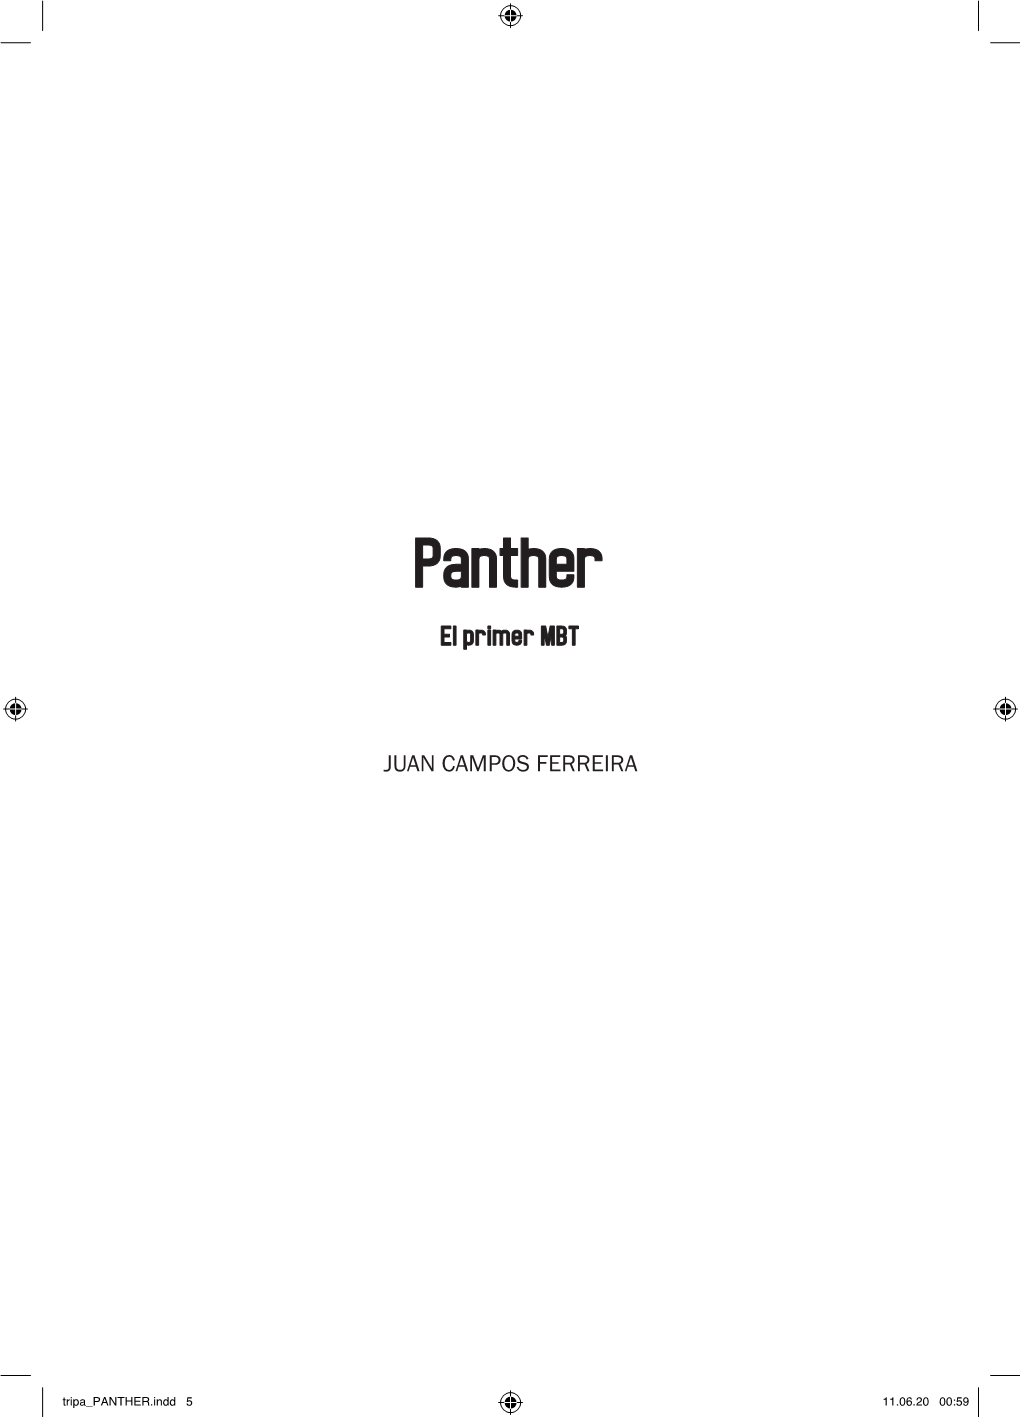 Panther, El Primer MBT